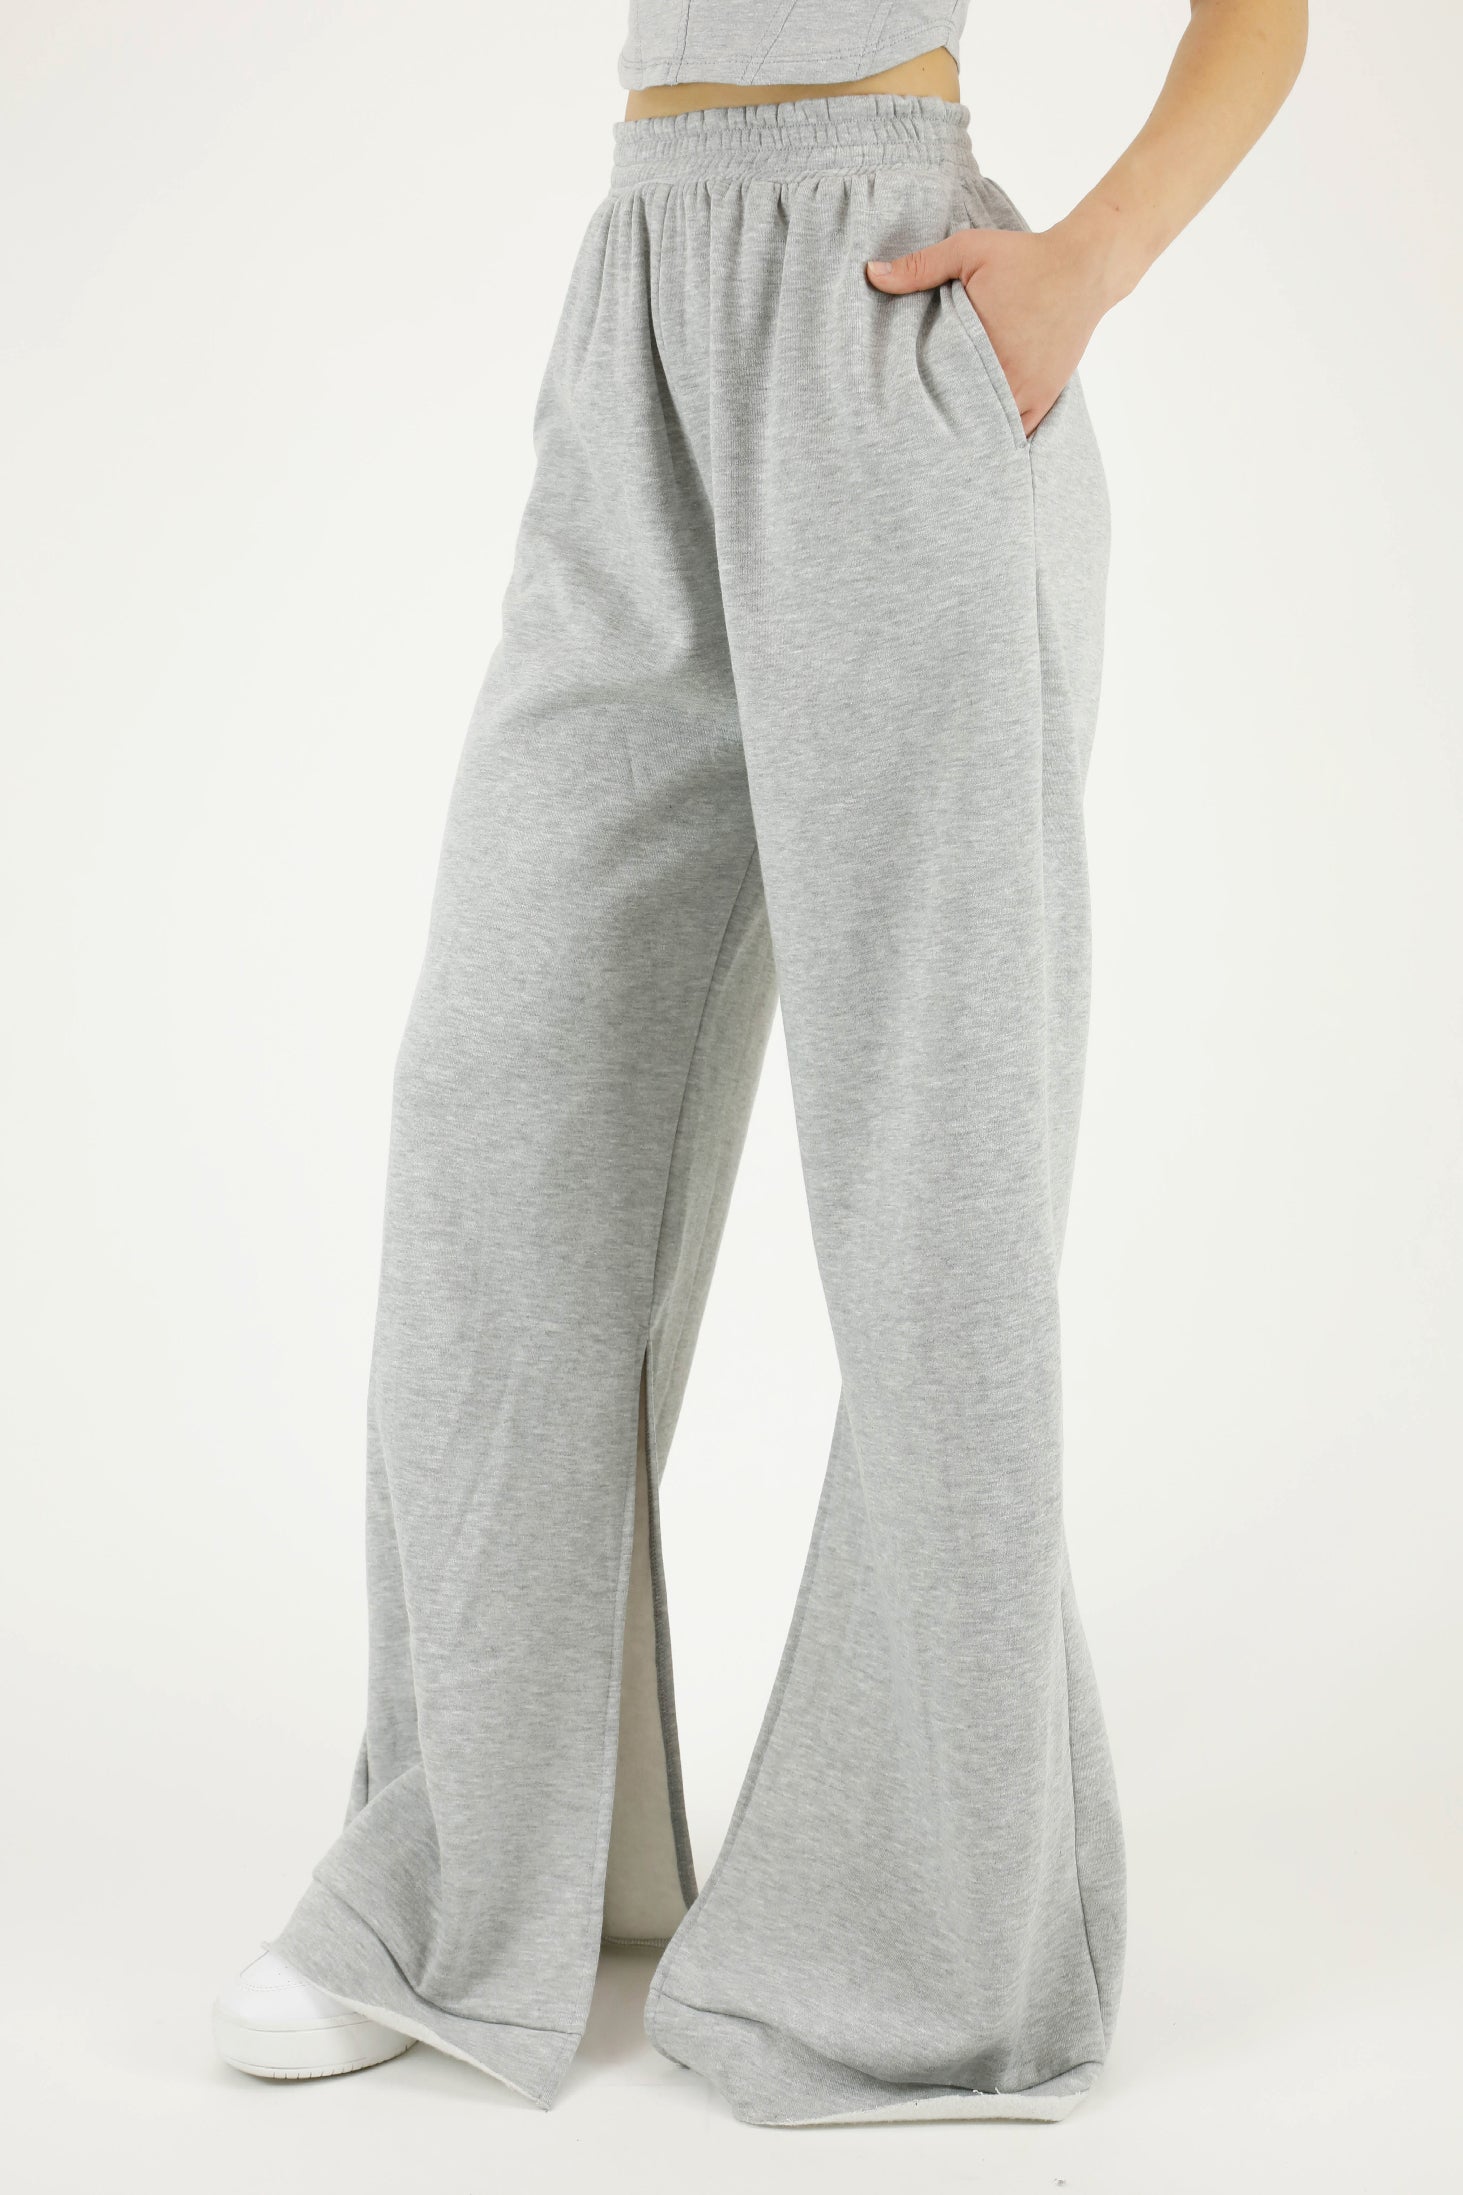 Buy Premium Fleece Wide Leg Sweatpants - Order Bottoms online